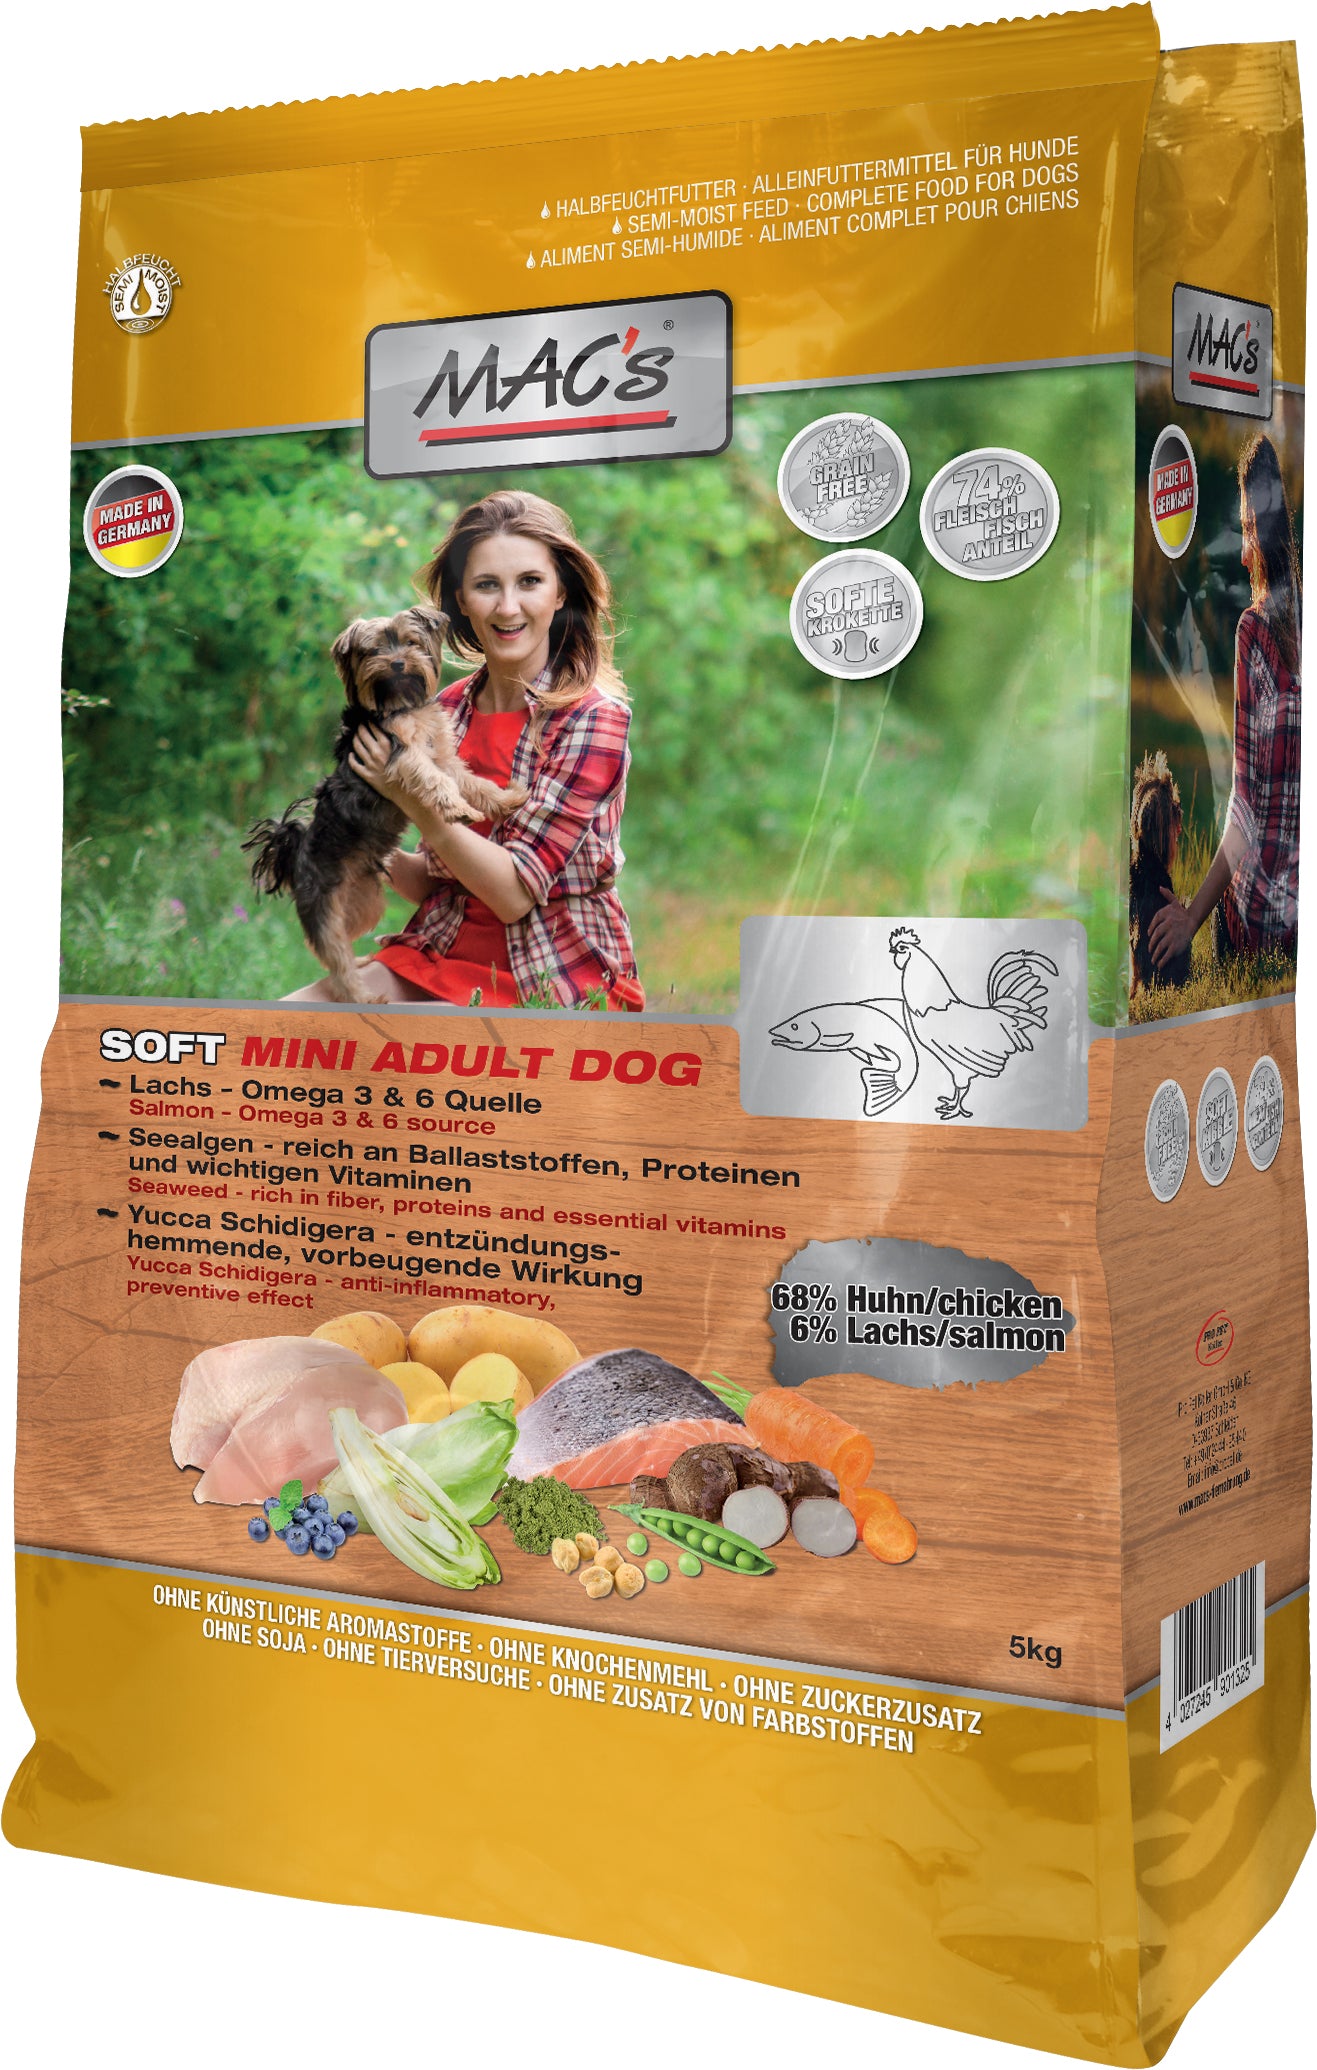 Artikel mit dem Namen MAC's Dog Soft Mini Huhn im Shop von zoo.de , dem Onlineshop für nachhaltiges Hundefutter und Katzenfutter.